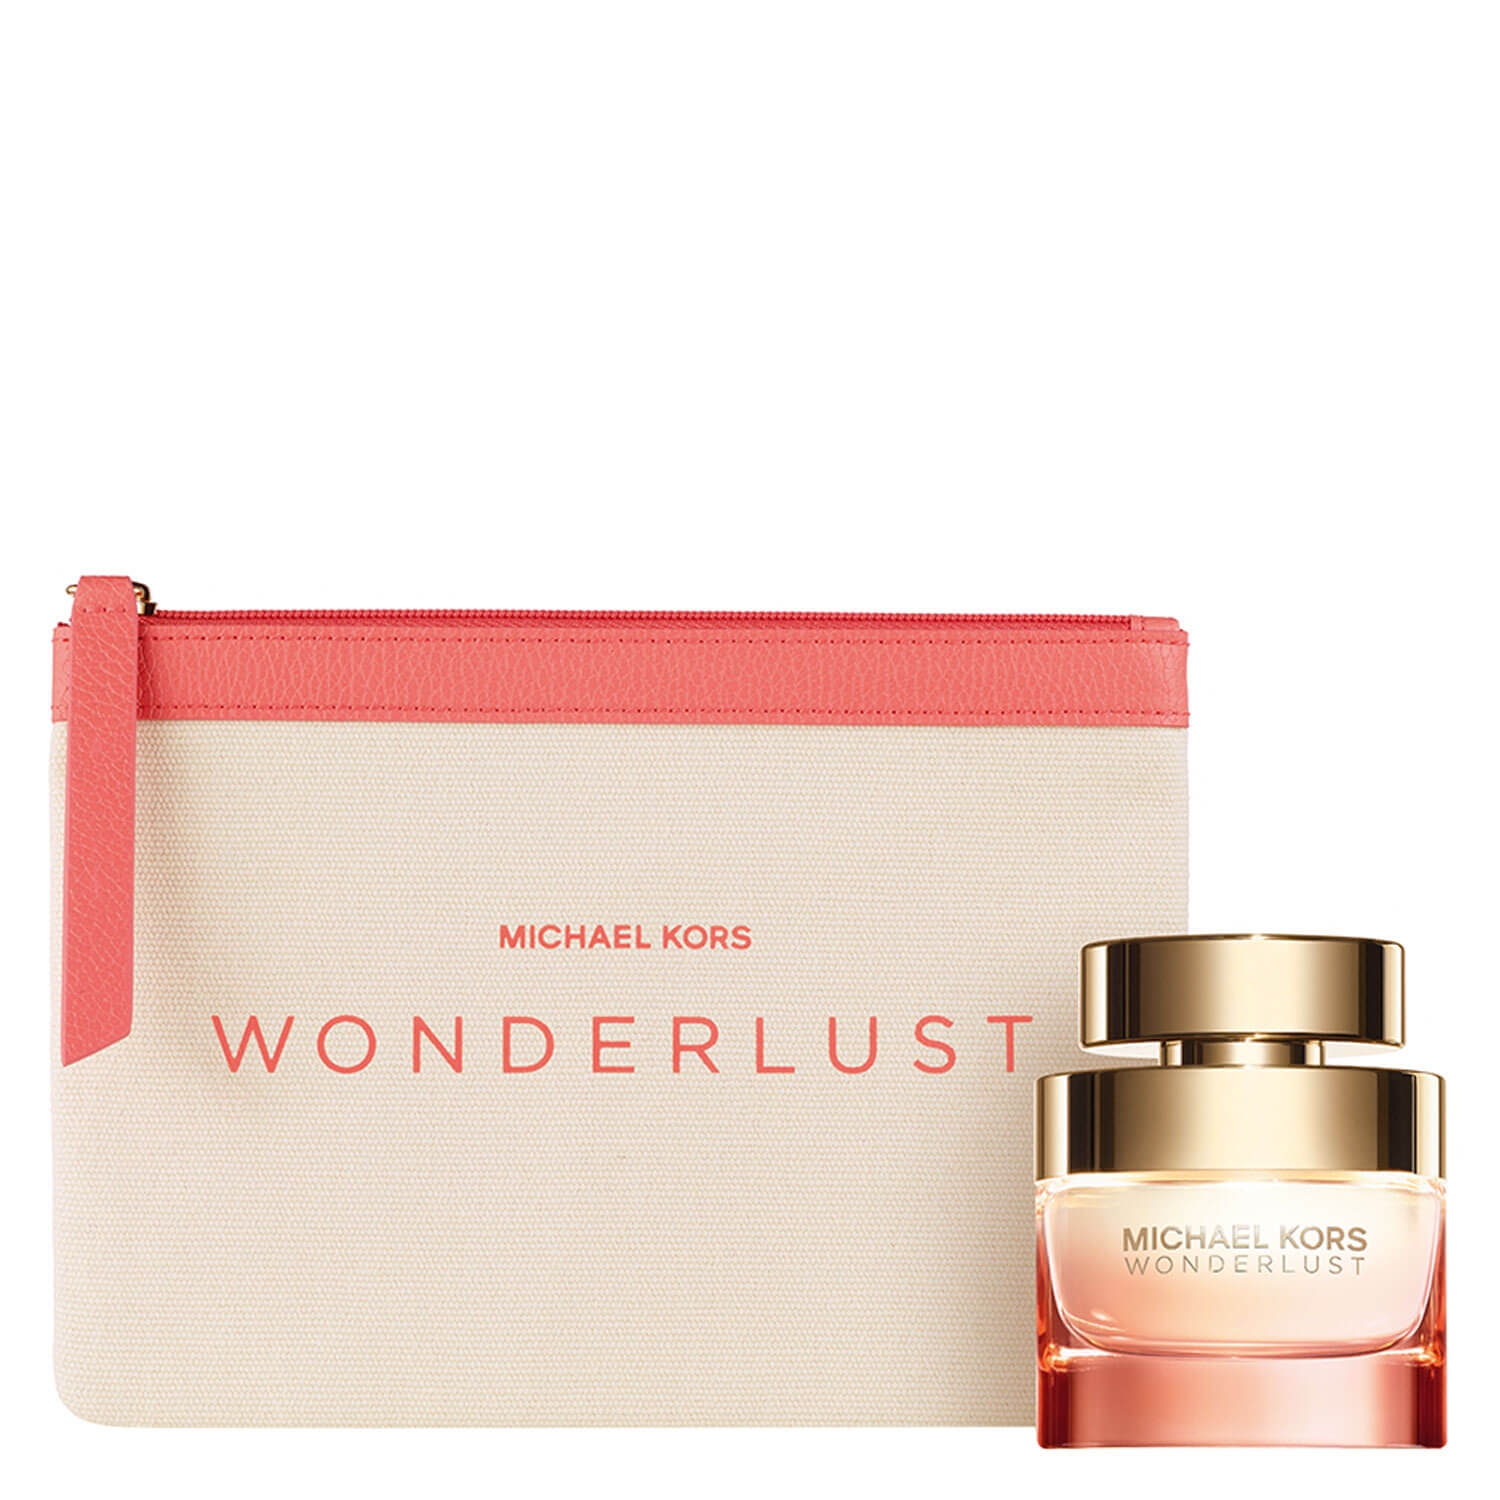 Produktbild von Wonderlust - Eau de Parfum Set